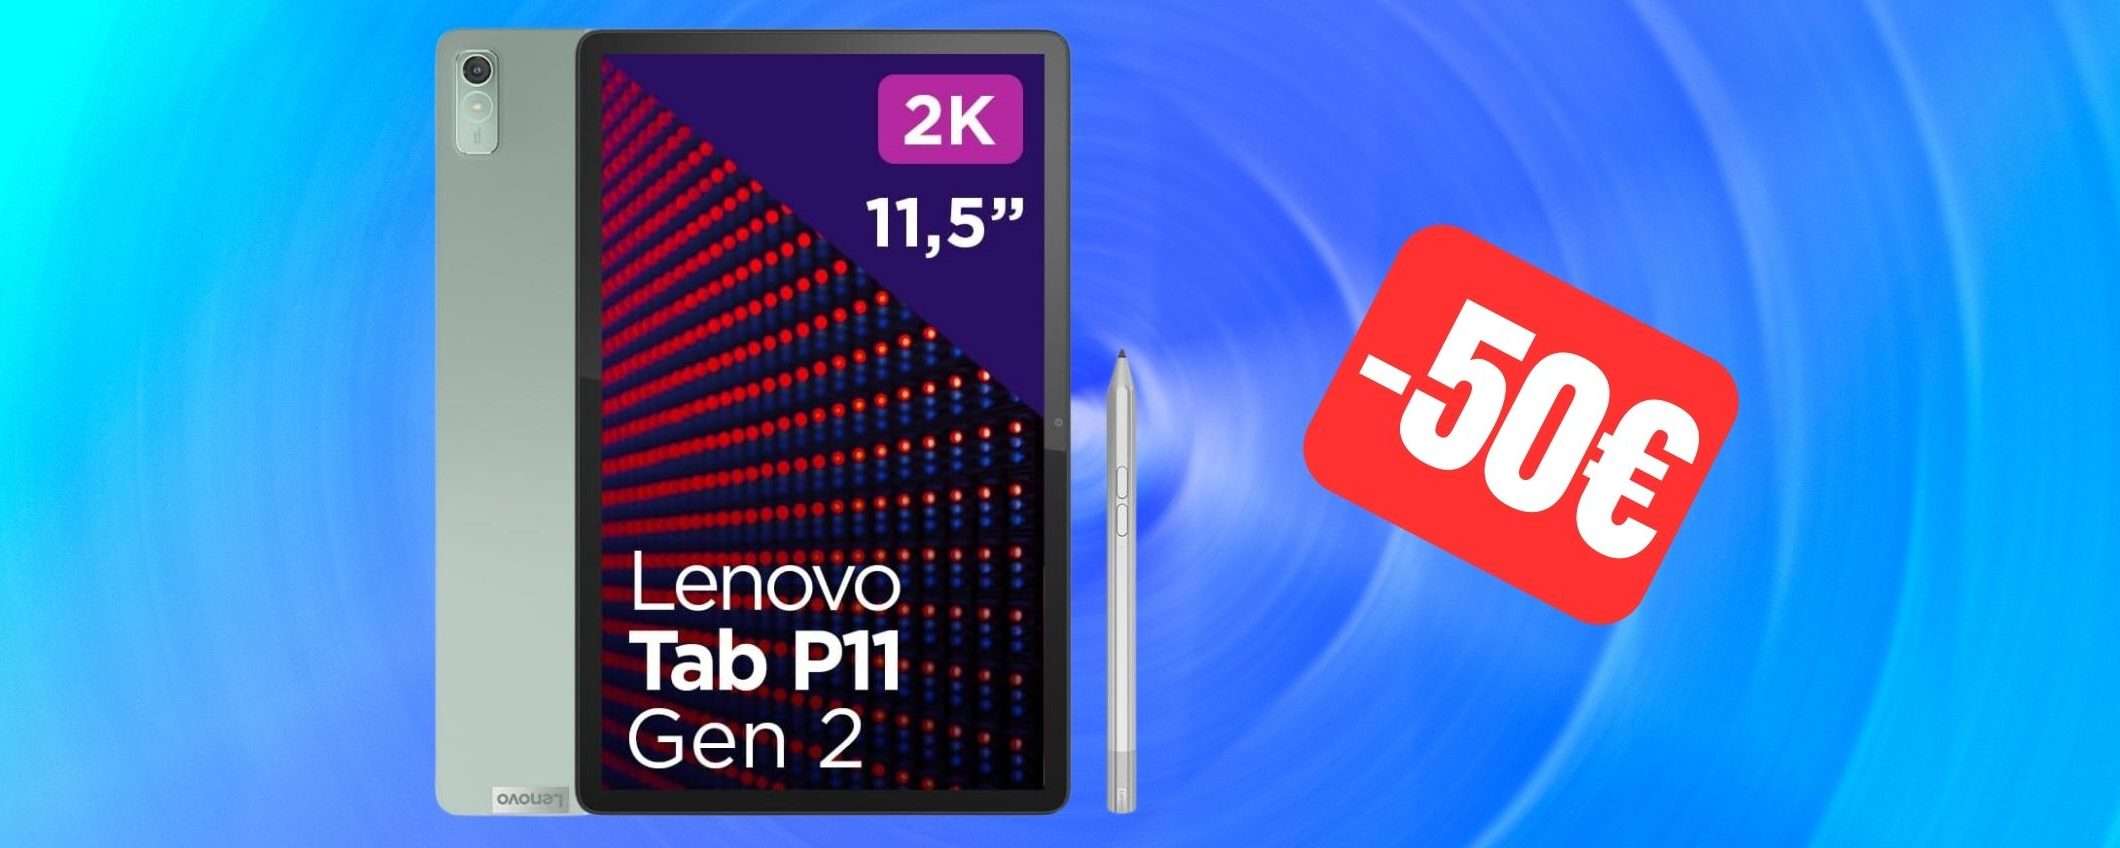 Amazon ti offre 50 euro di sconto su questo ottimo tablet Lenovo